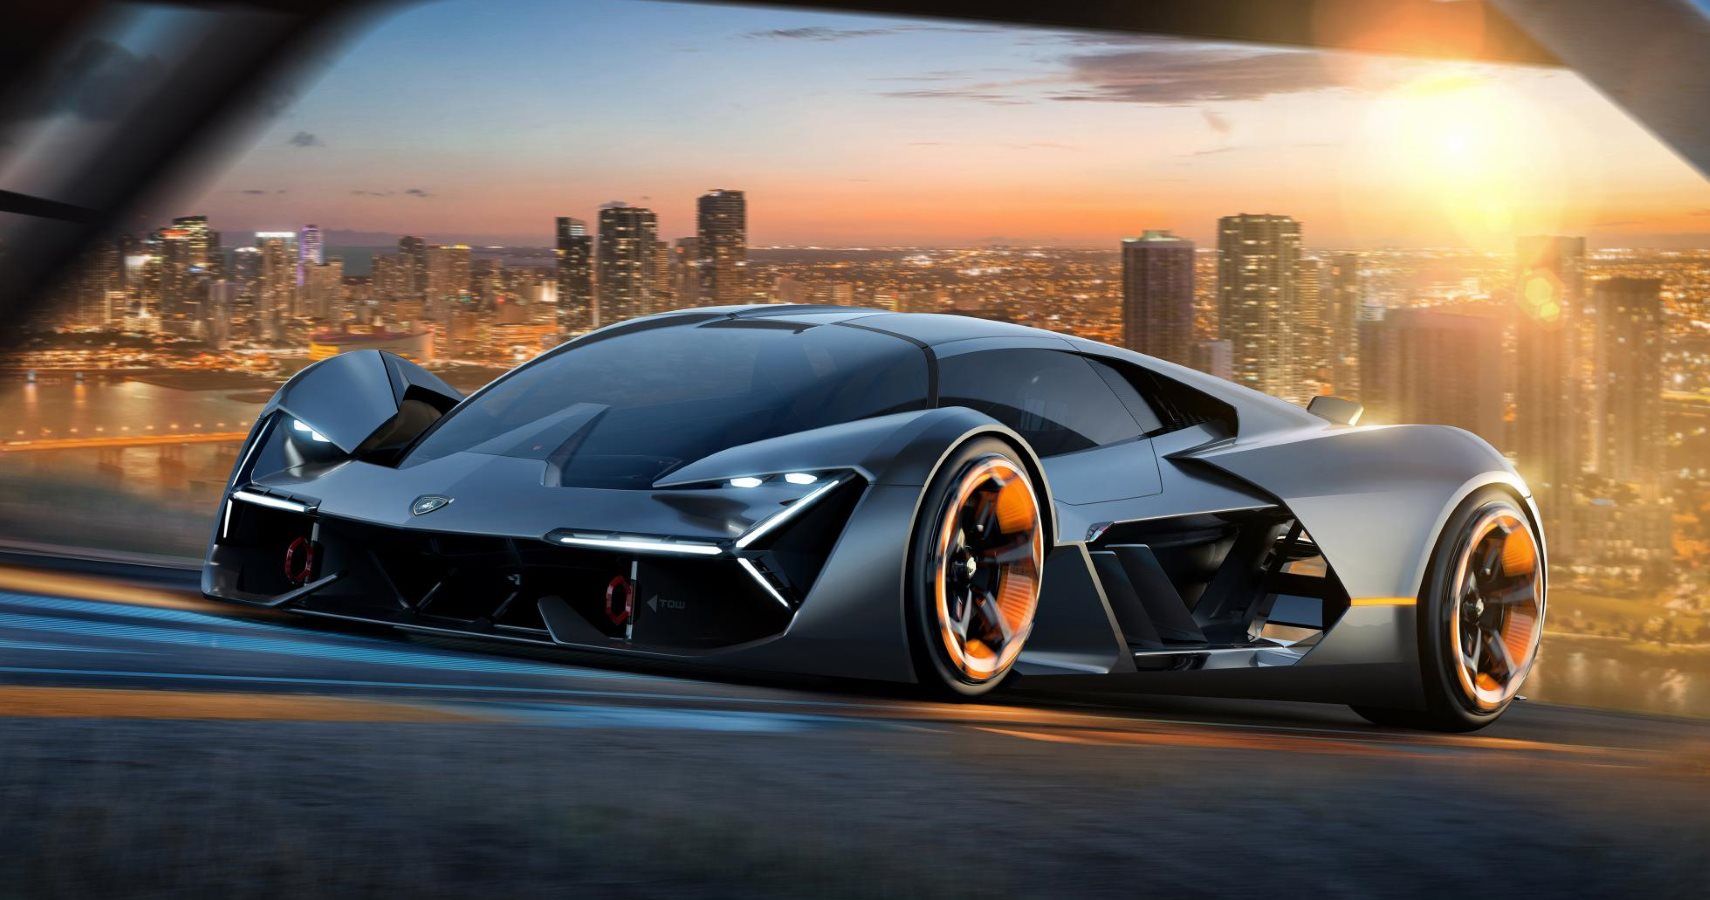 Lamborghini Aventador & Huracan Next-Gen To Be Hybrids